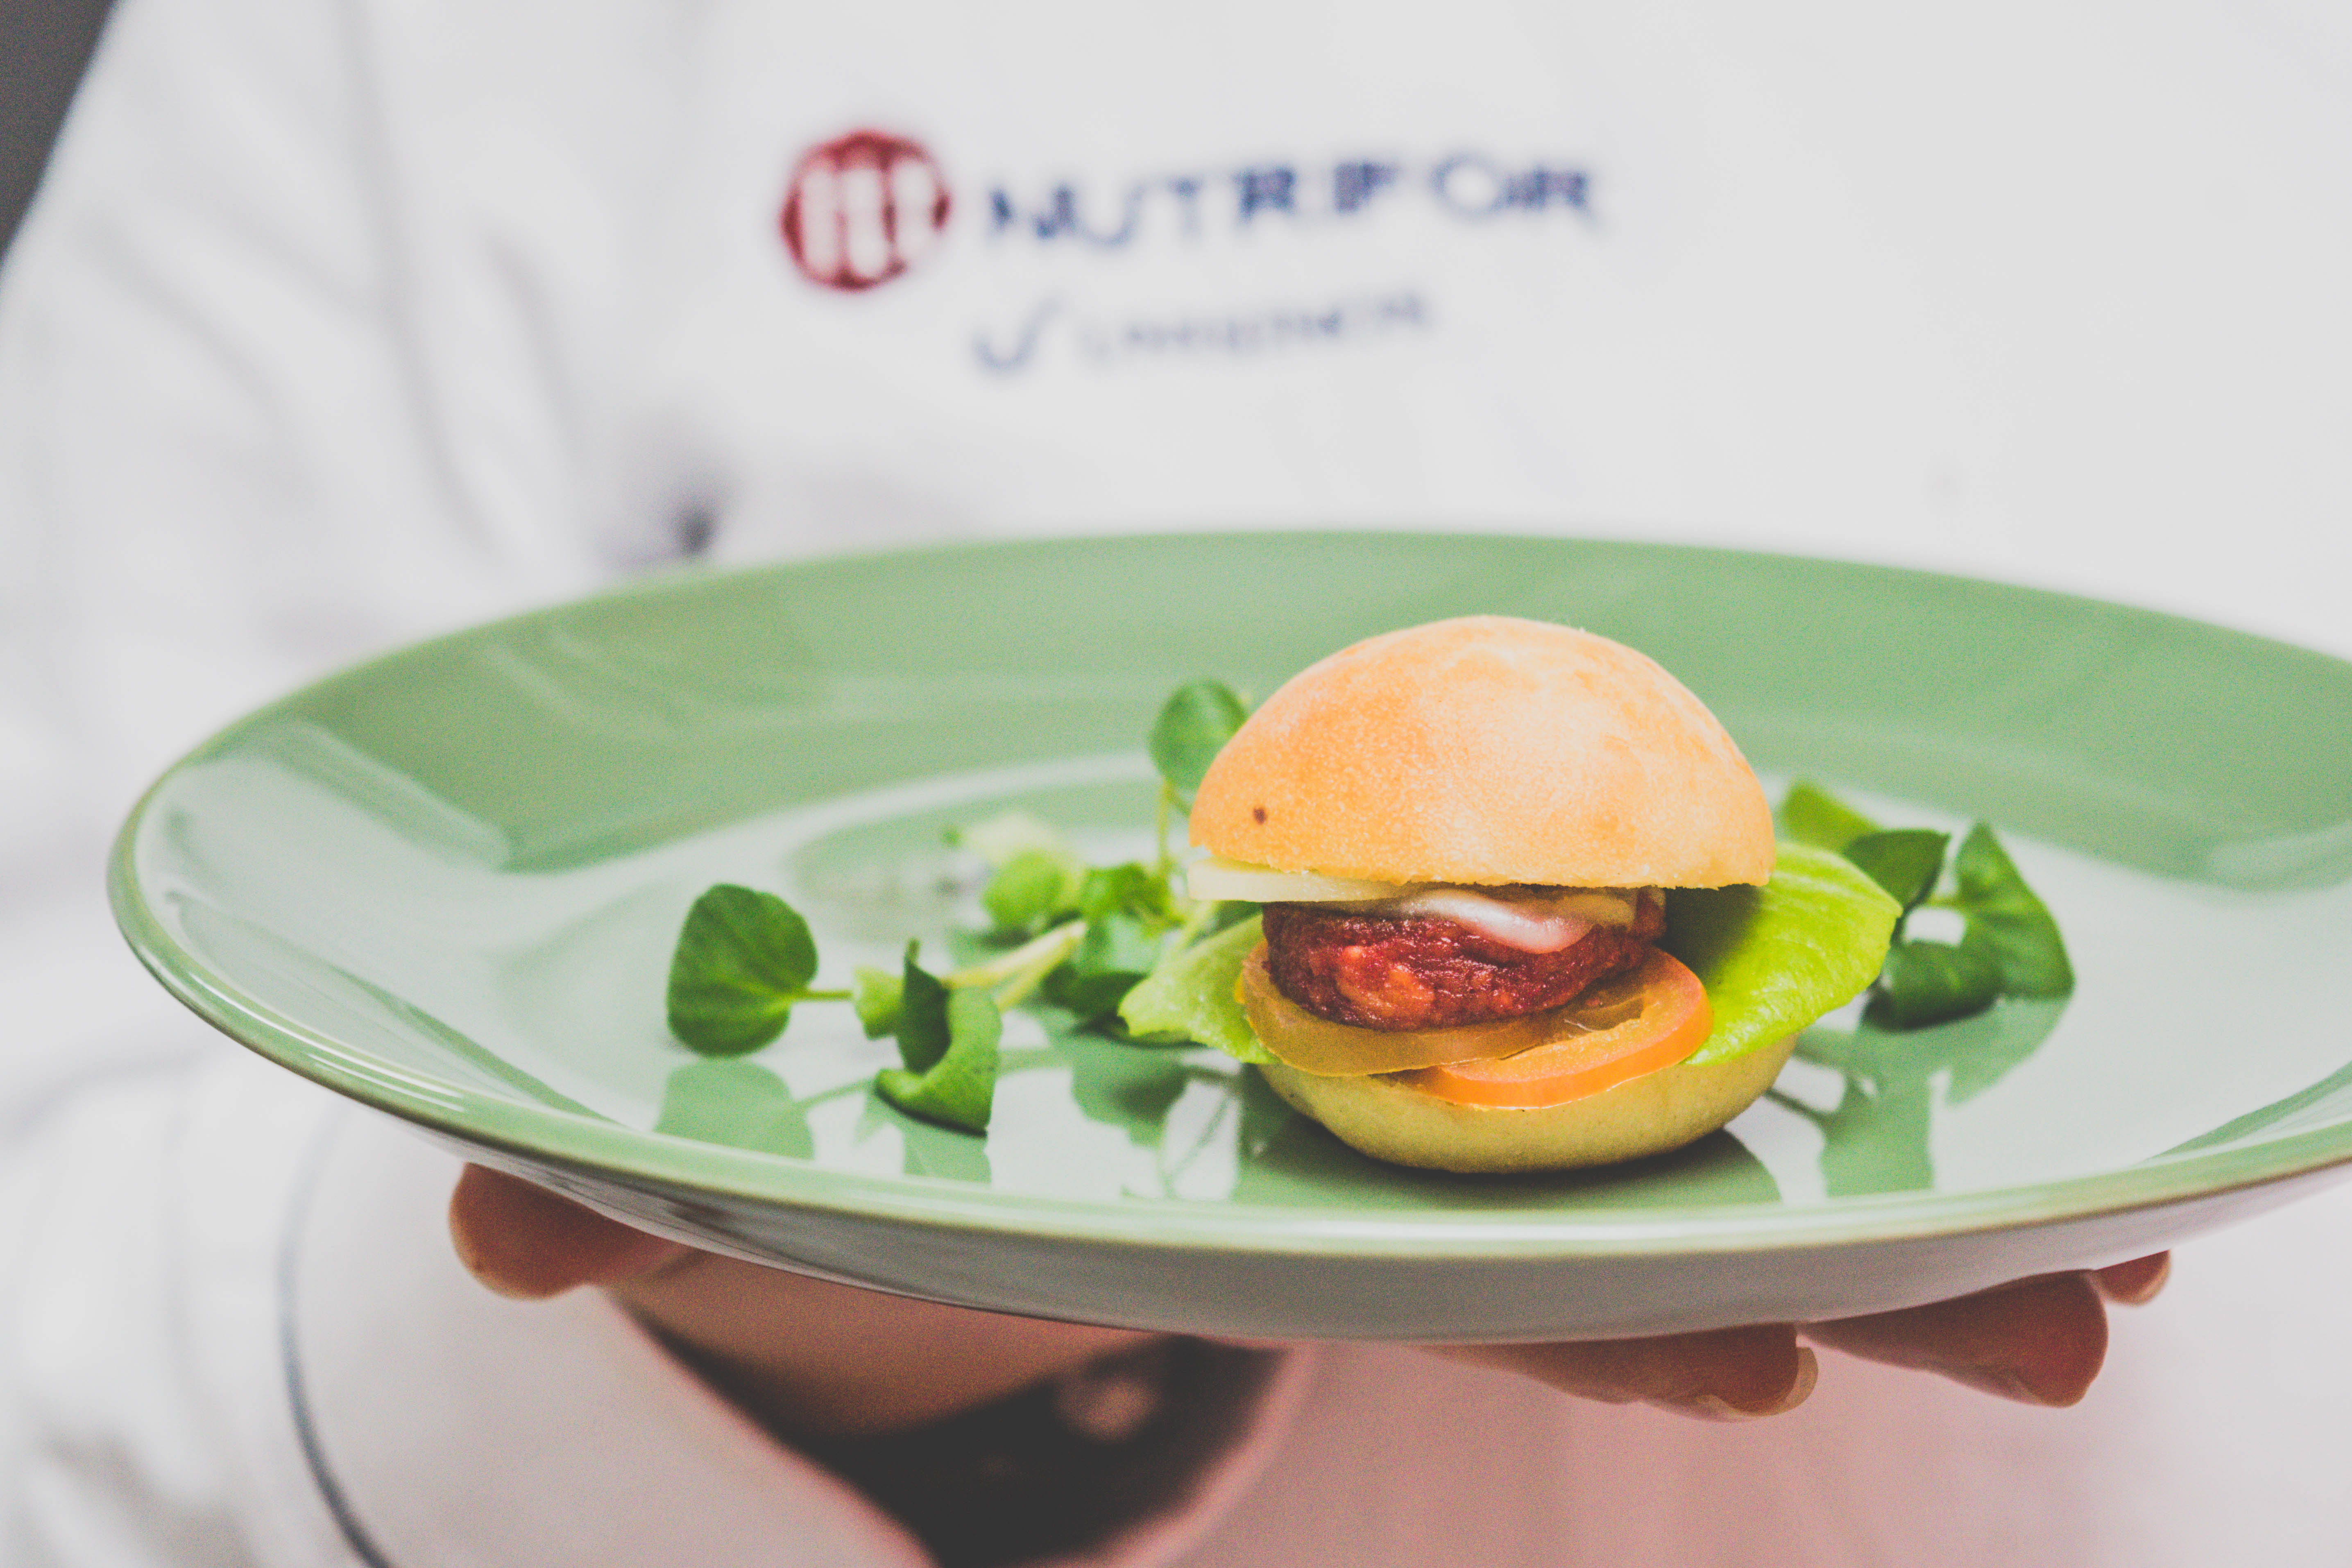 itt Nutrifor e Ambi Realfood desenvolvem em parceria hambúrguer com carne cultivada 